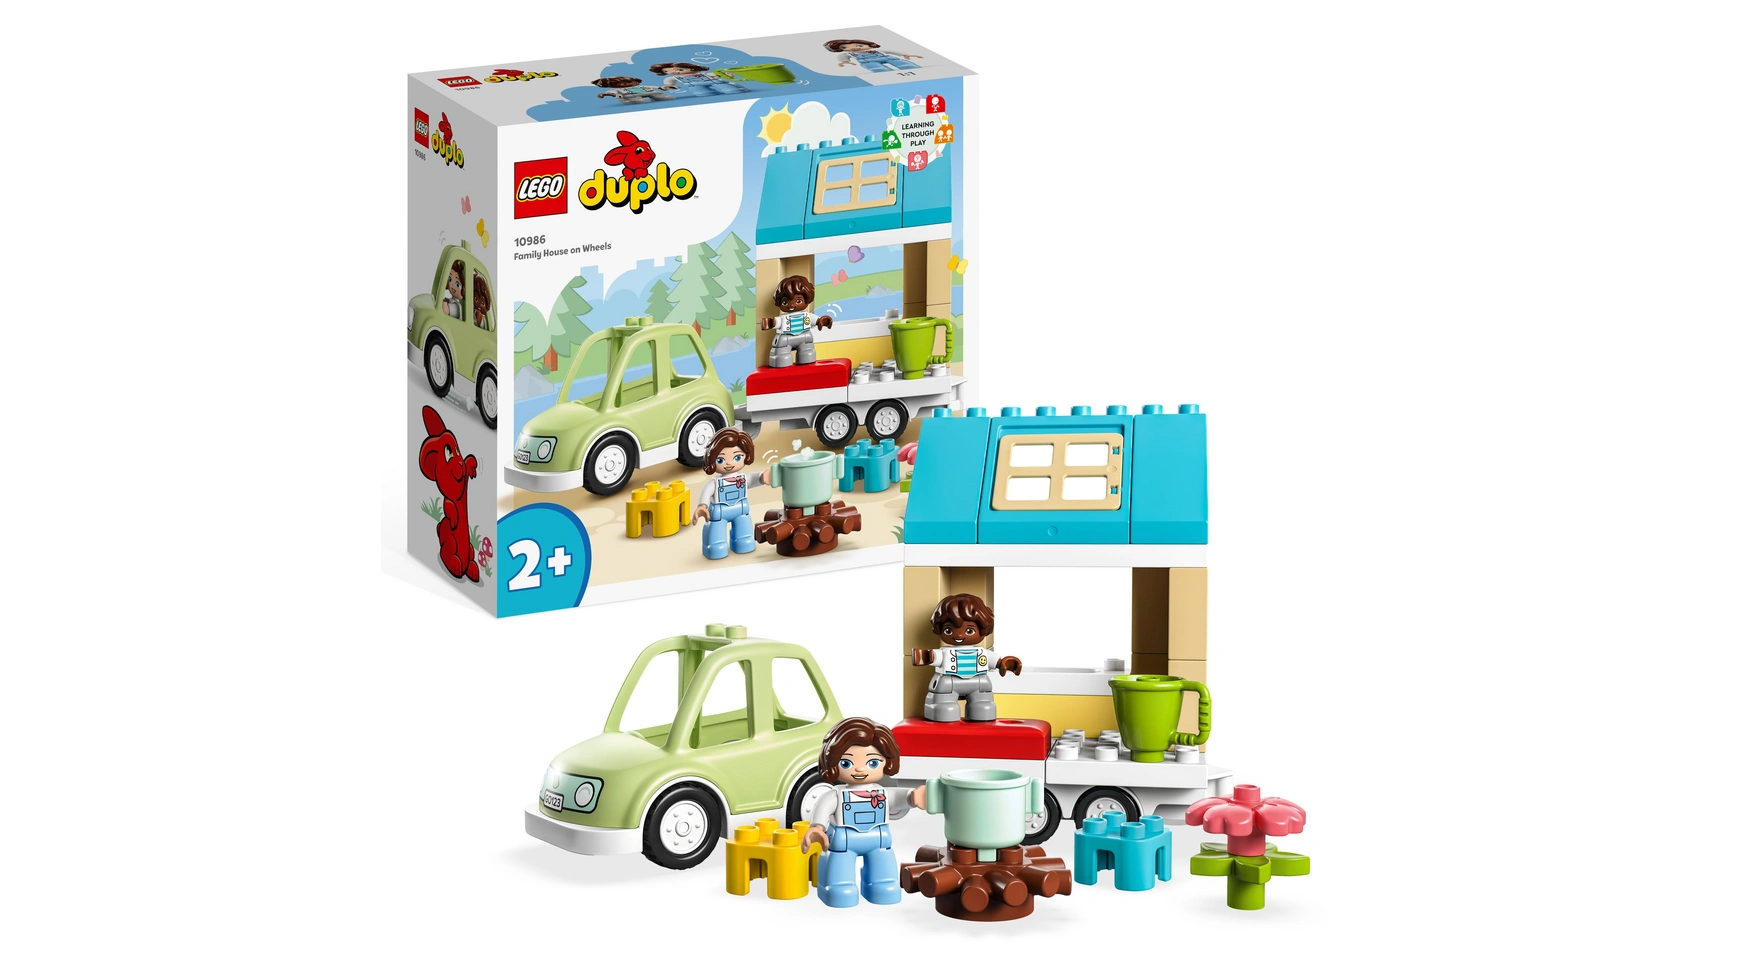 Lego DUPLO Дом на колесах, игрушечная машина с большими кубиками lego duplo моя первая увлекательная развивающая игрушка для сборки для детей от 1 5 лет и старше